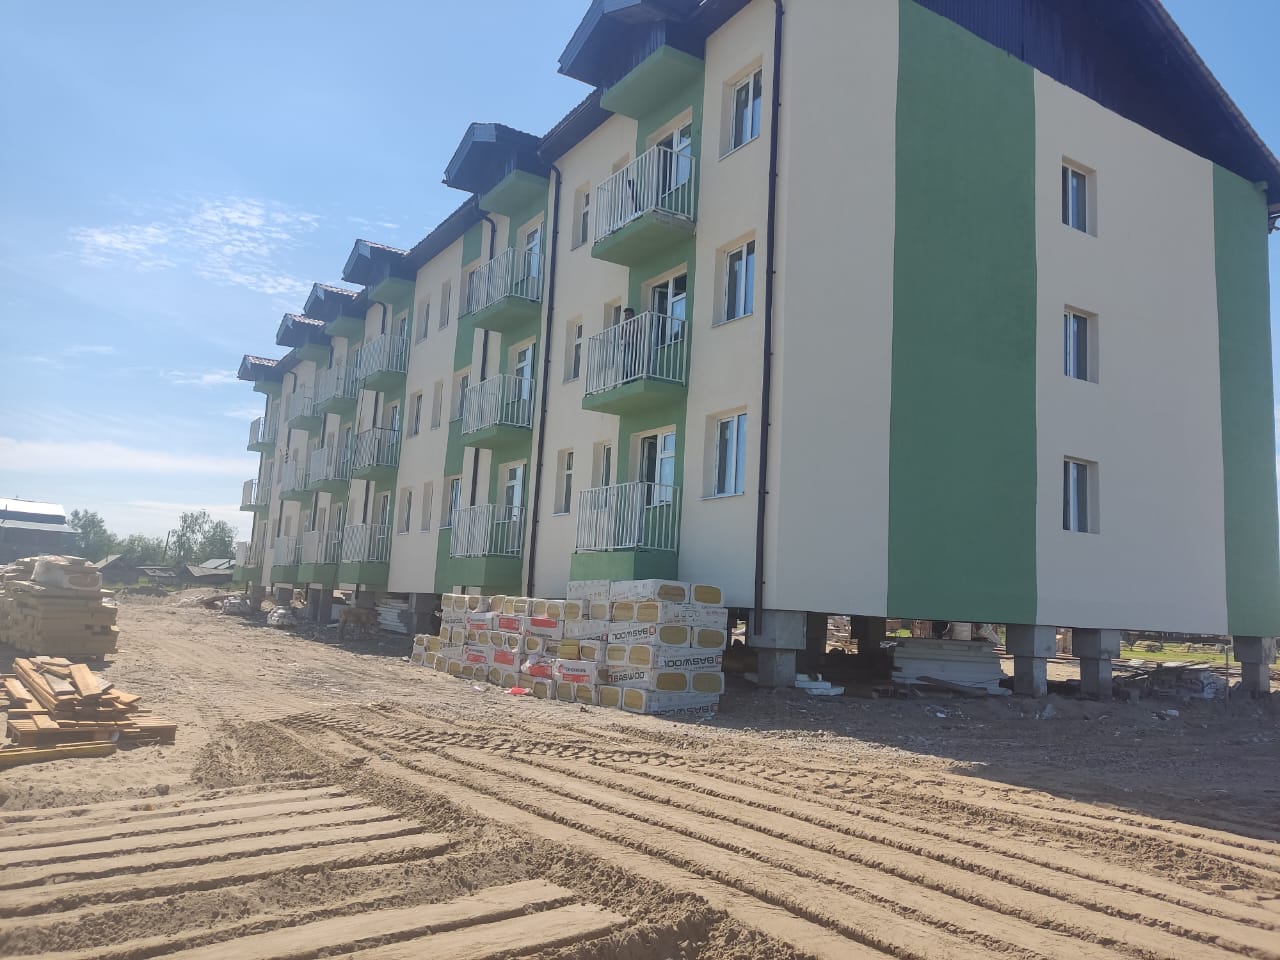 Новый многоквартирный дом строят по программе переселения в Таттинском районе Якутии